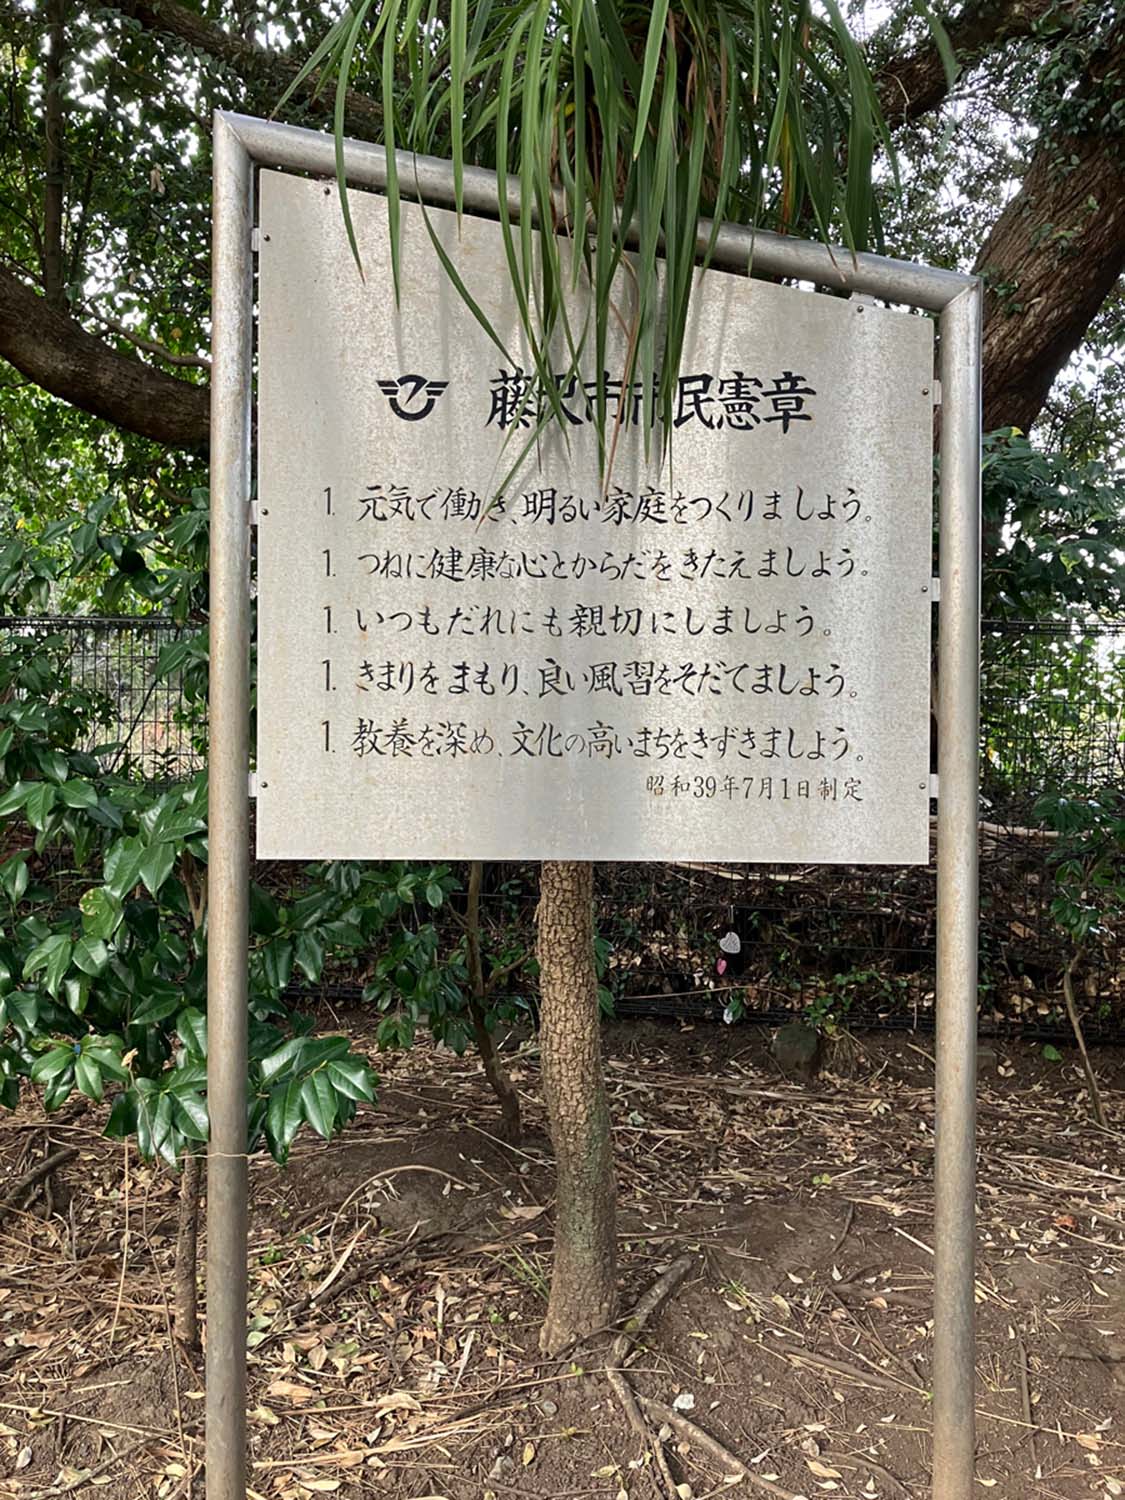 江の島に設置されている金属板市民憲章。後ろの木が成長すると、文章が隠れてしまう危険がある。